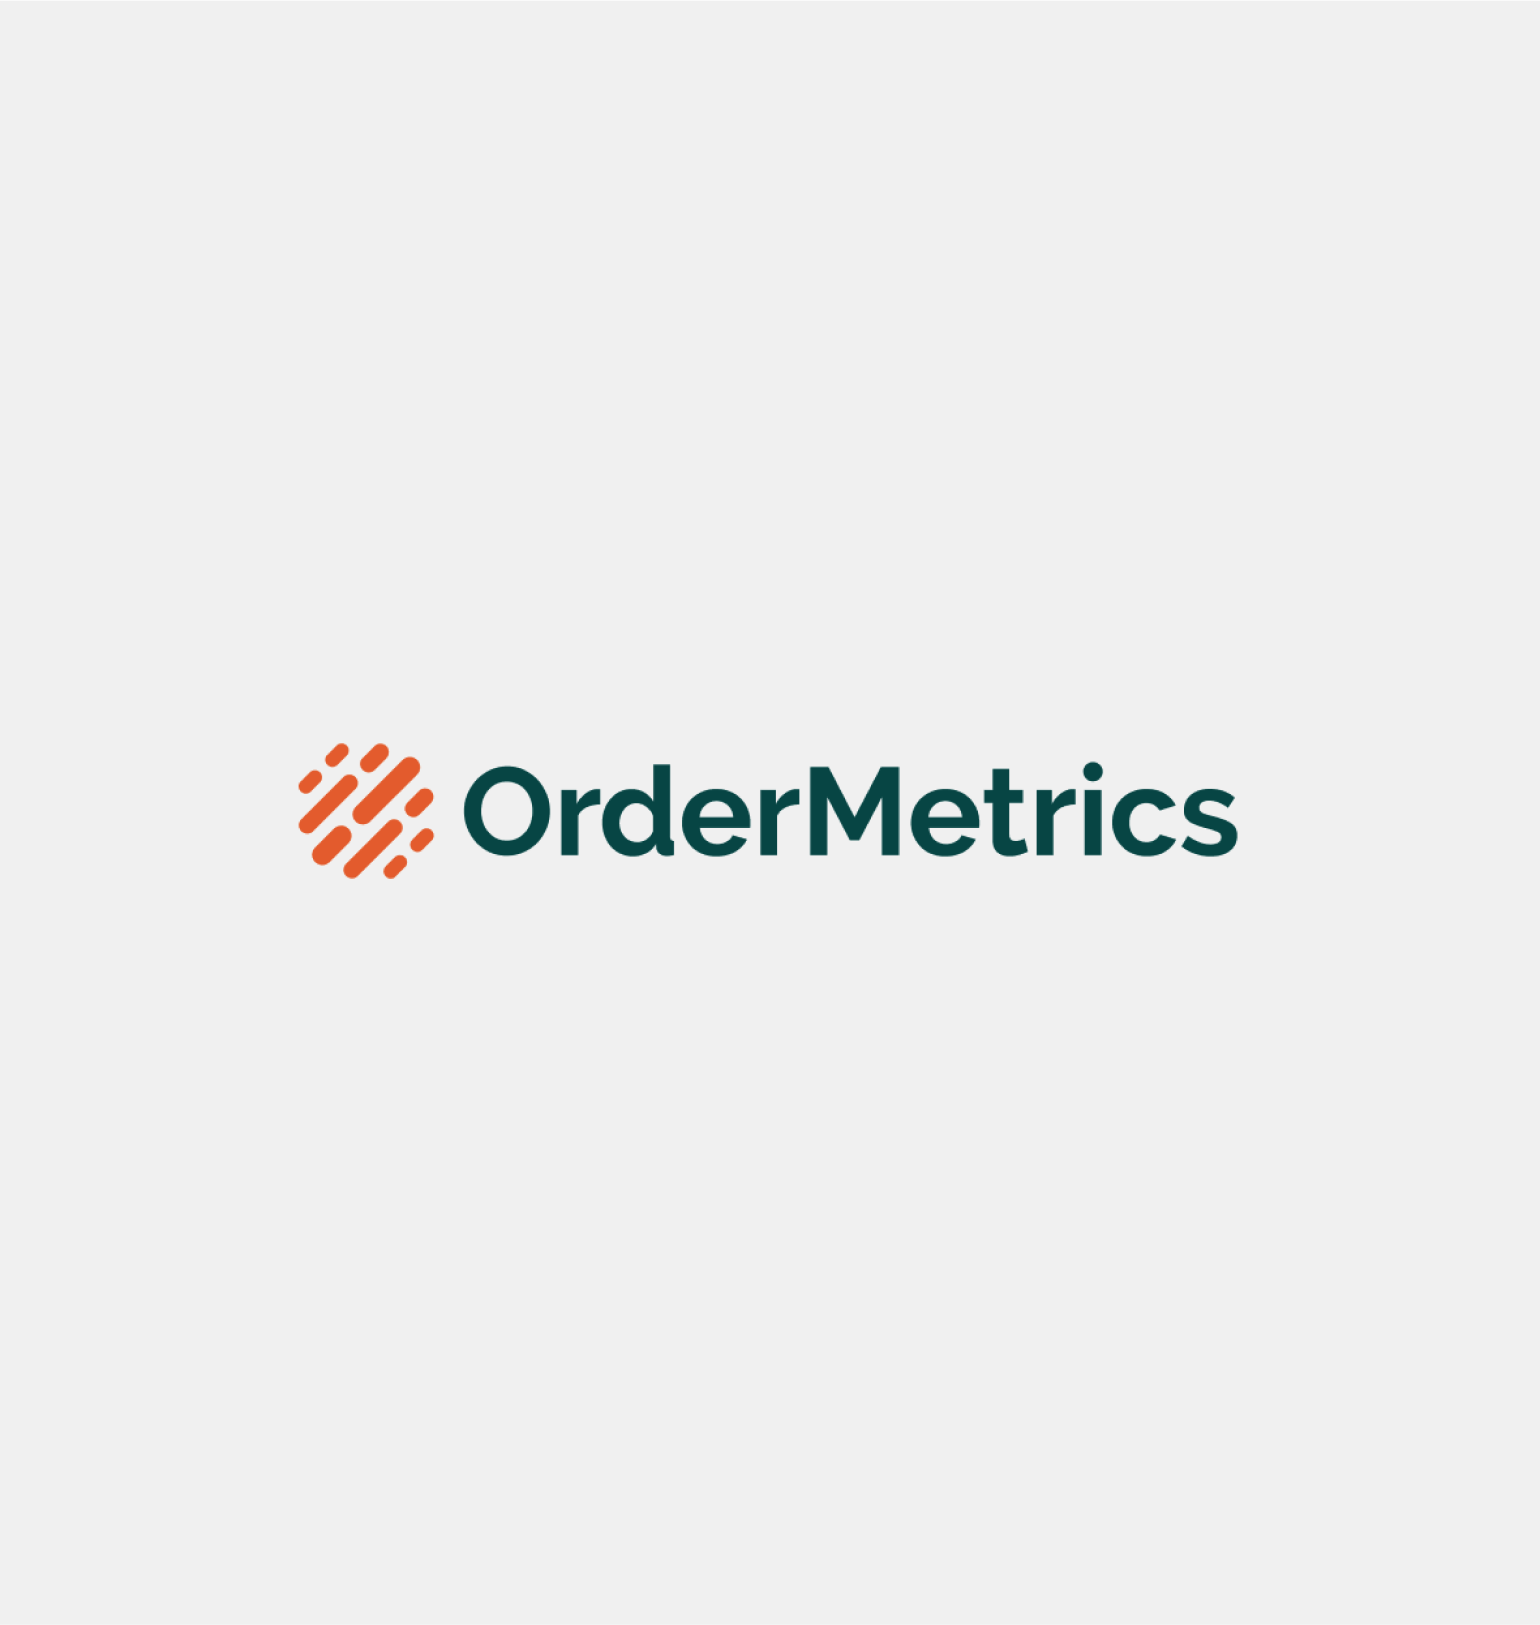 OrderMetrics-4